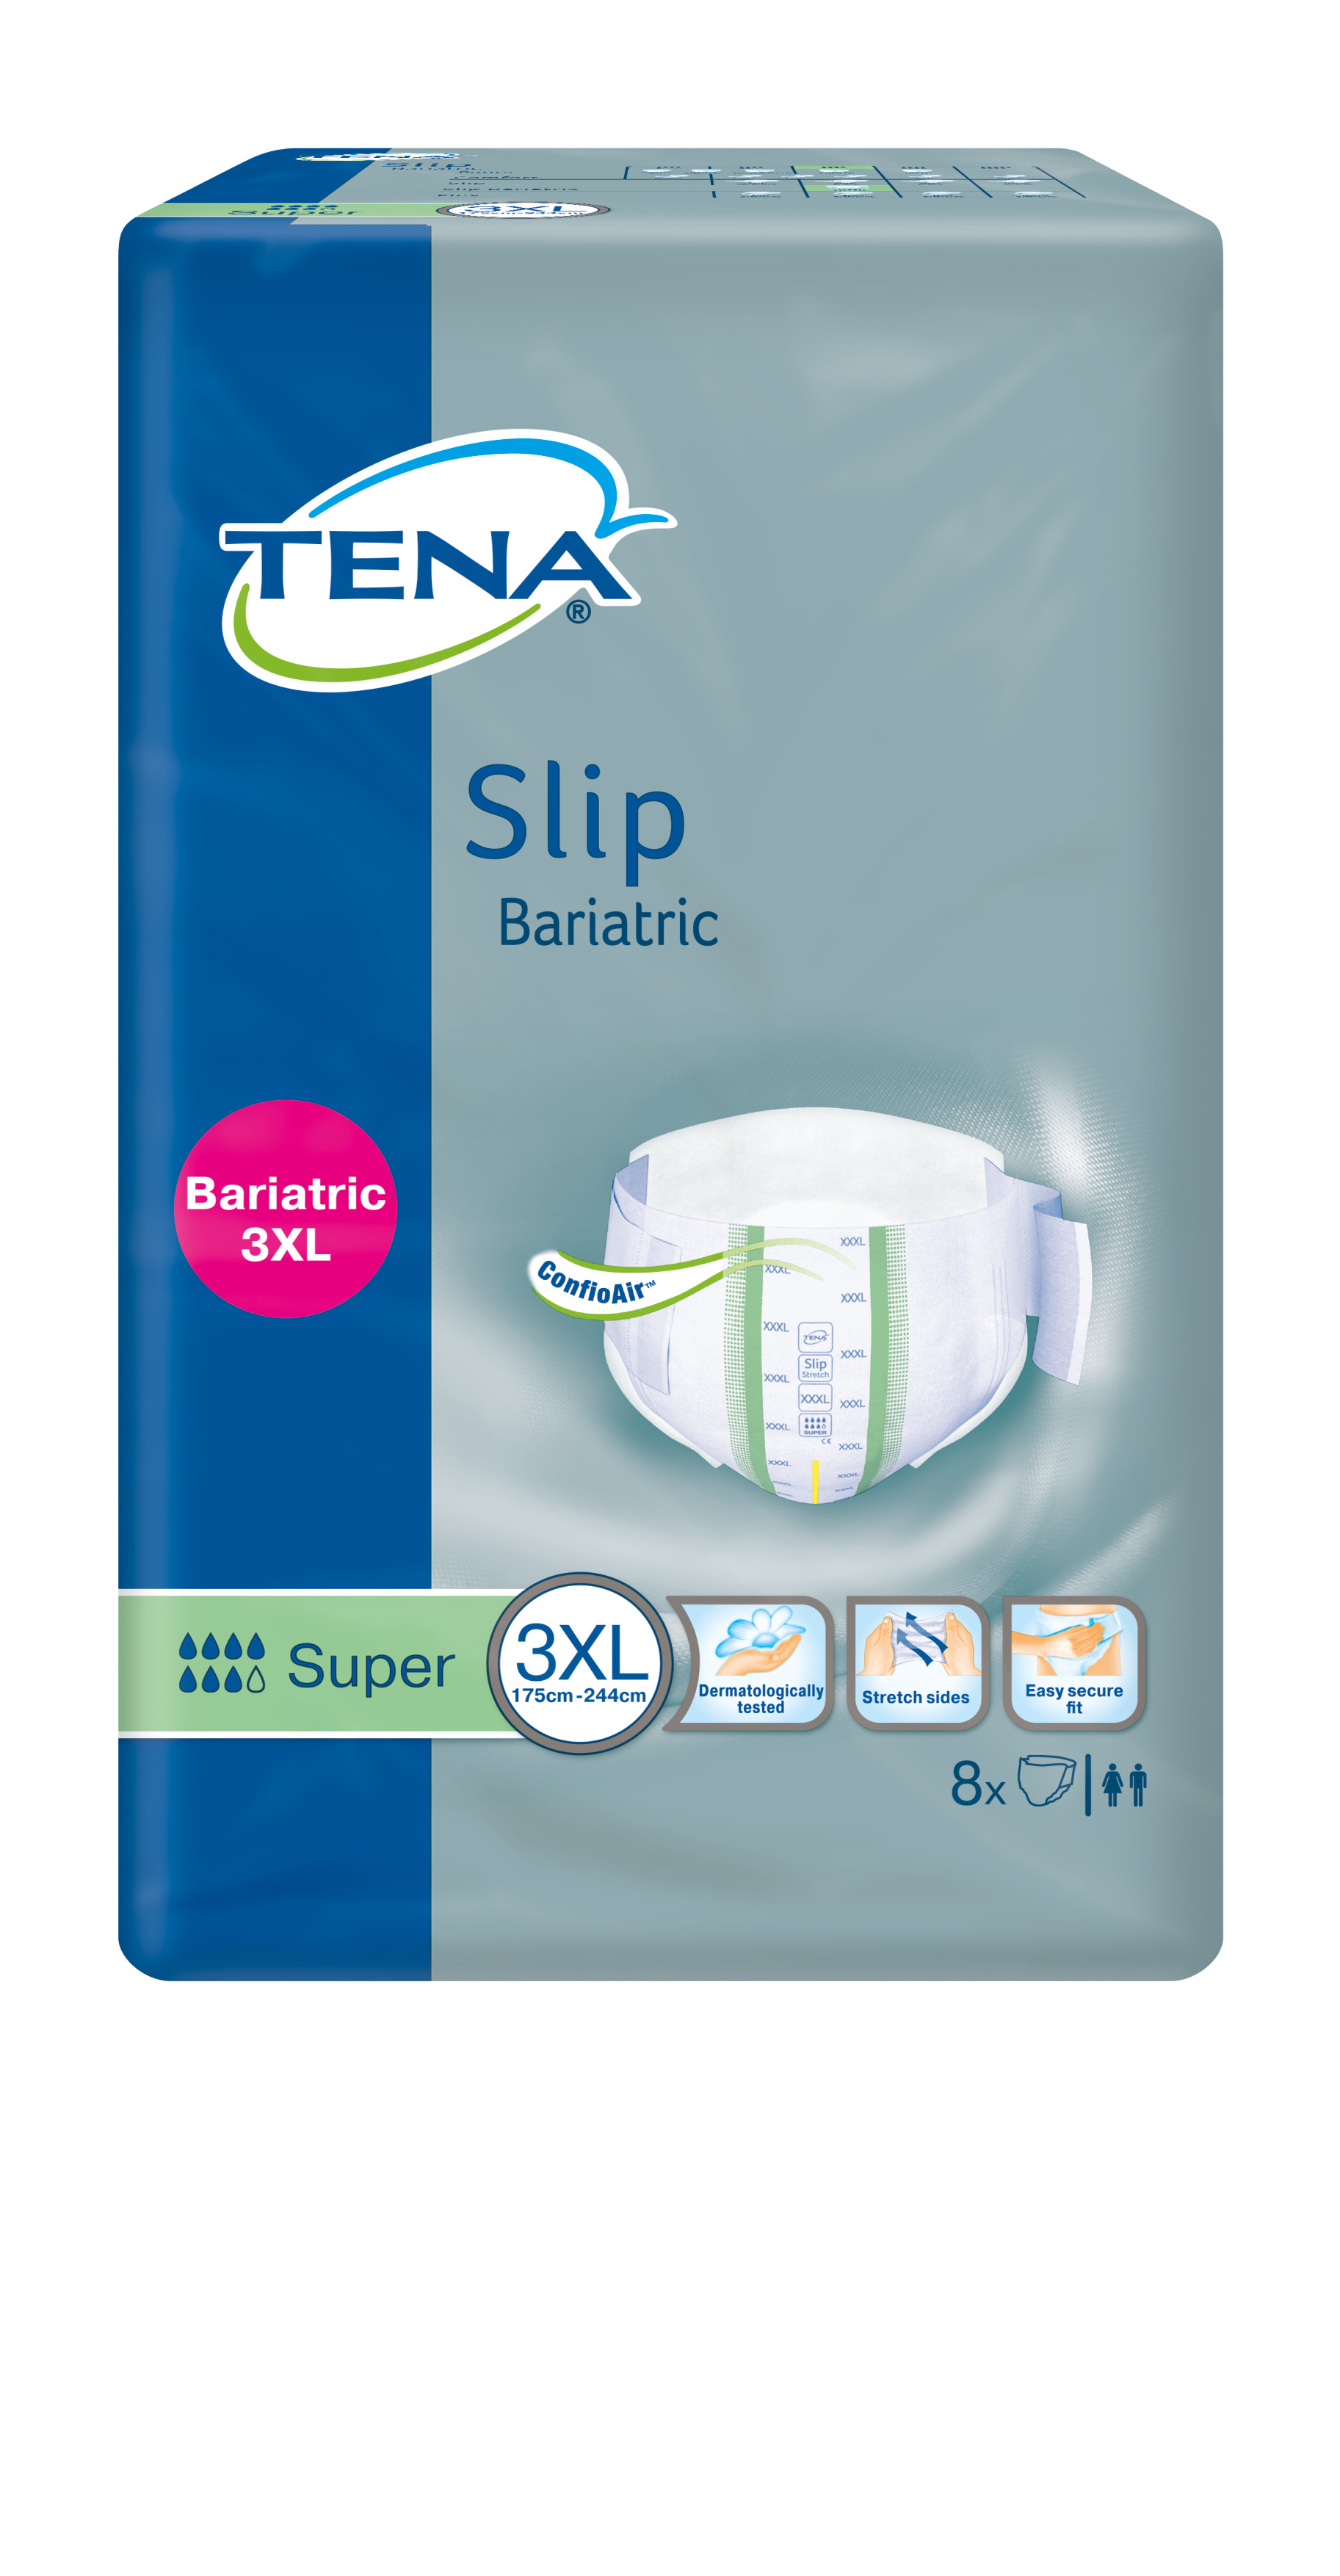 Il existe aujourd’hui des dispositifs (ex : TENA Slip Bariatric) adaptés aux personnes souffrant à la fois d’incontinence et d’obésité. 